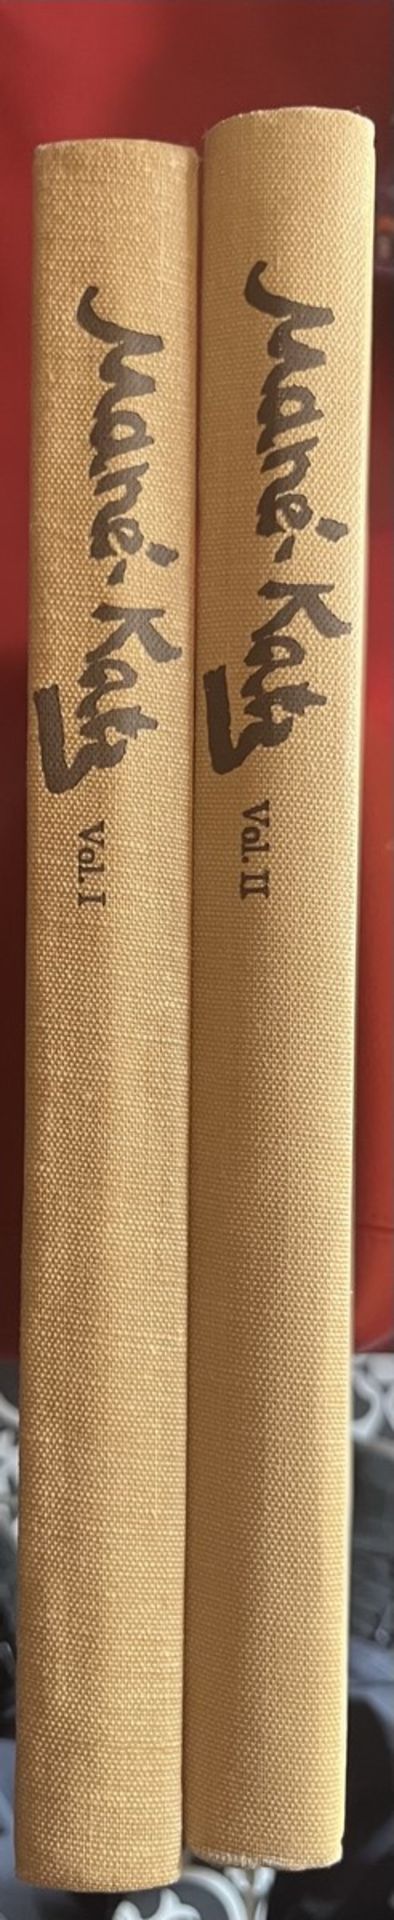 [MANE- KATZ]- l’Oeuvre complète, 2 vols. 1894-1962 .L’Oeuvre complète (2 Volumes Set) - Bild 5 aus 6